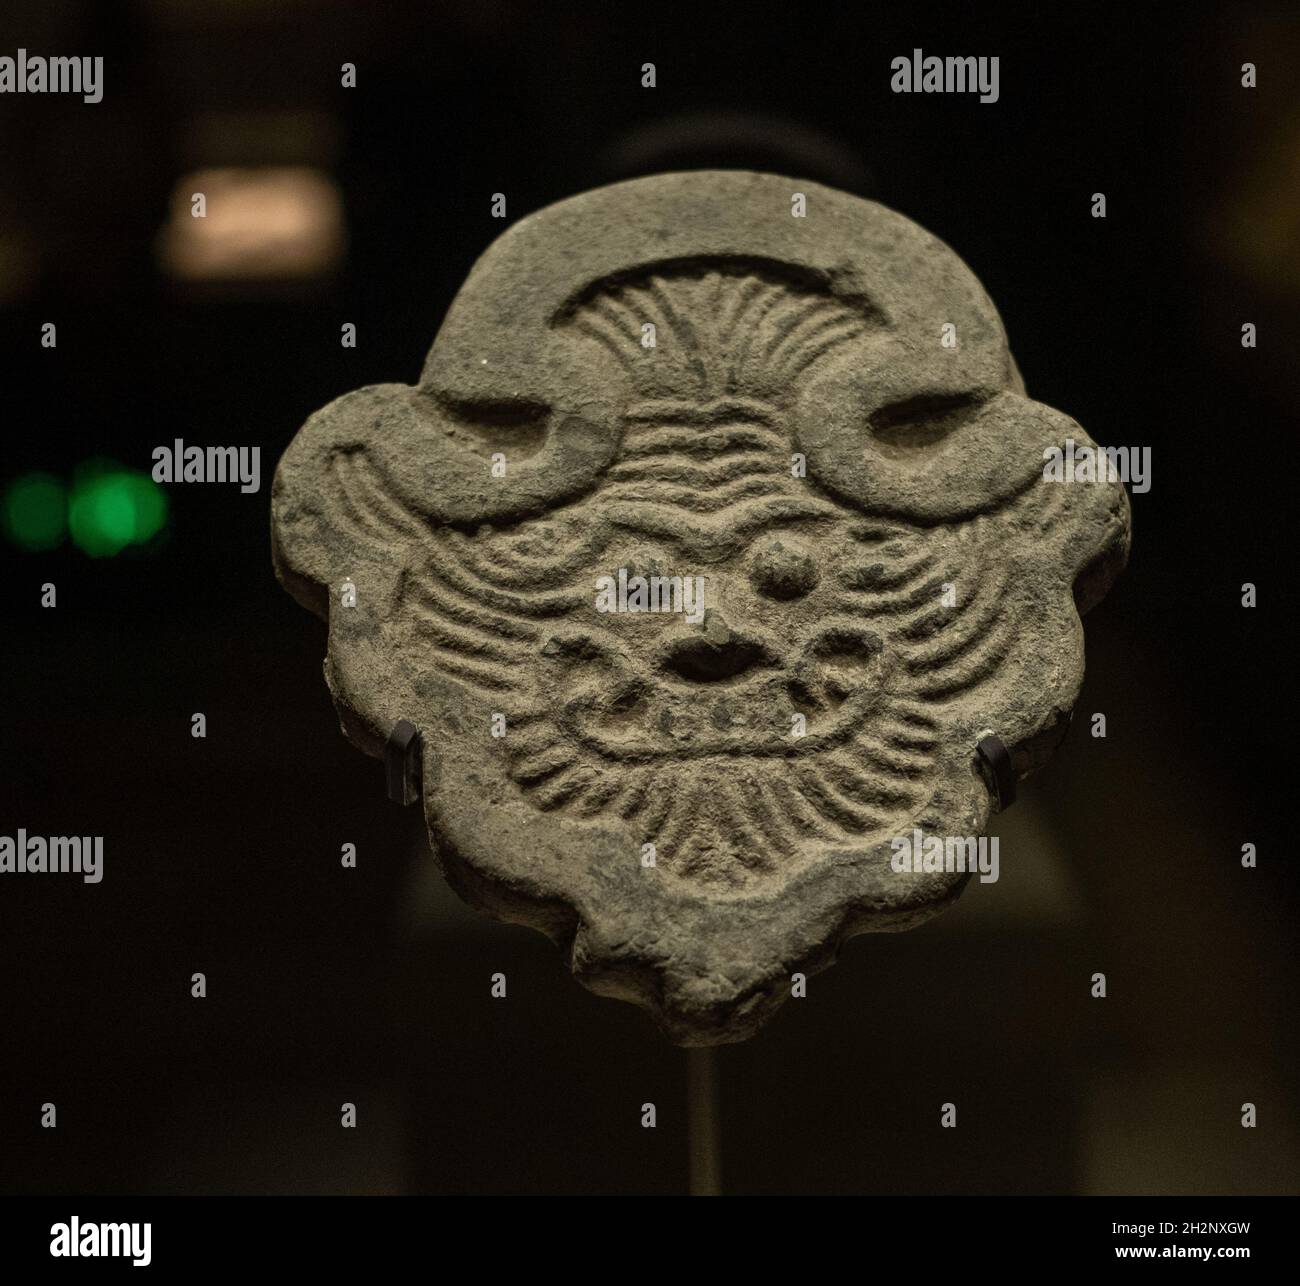 Pezzetto di tegole di iao (916-1125). Si tratta di una miscela di tegole gocciolanti e grondaie tile.Inner Mongolia Museum Collection. Foto Stock